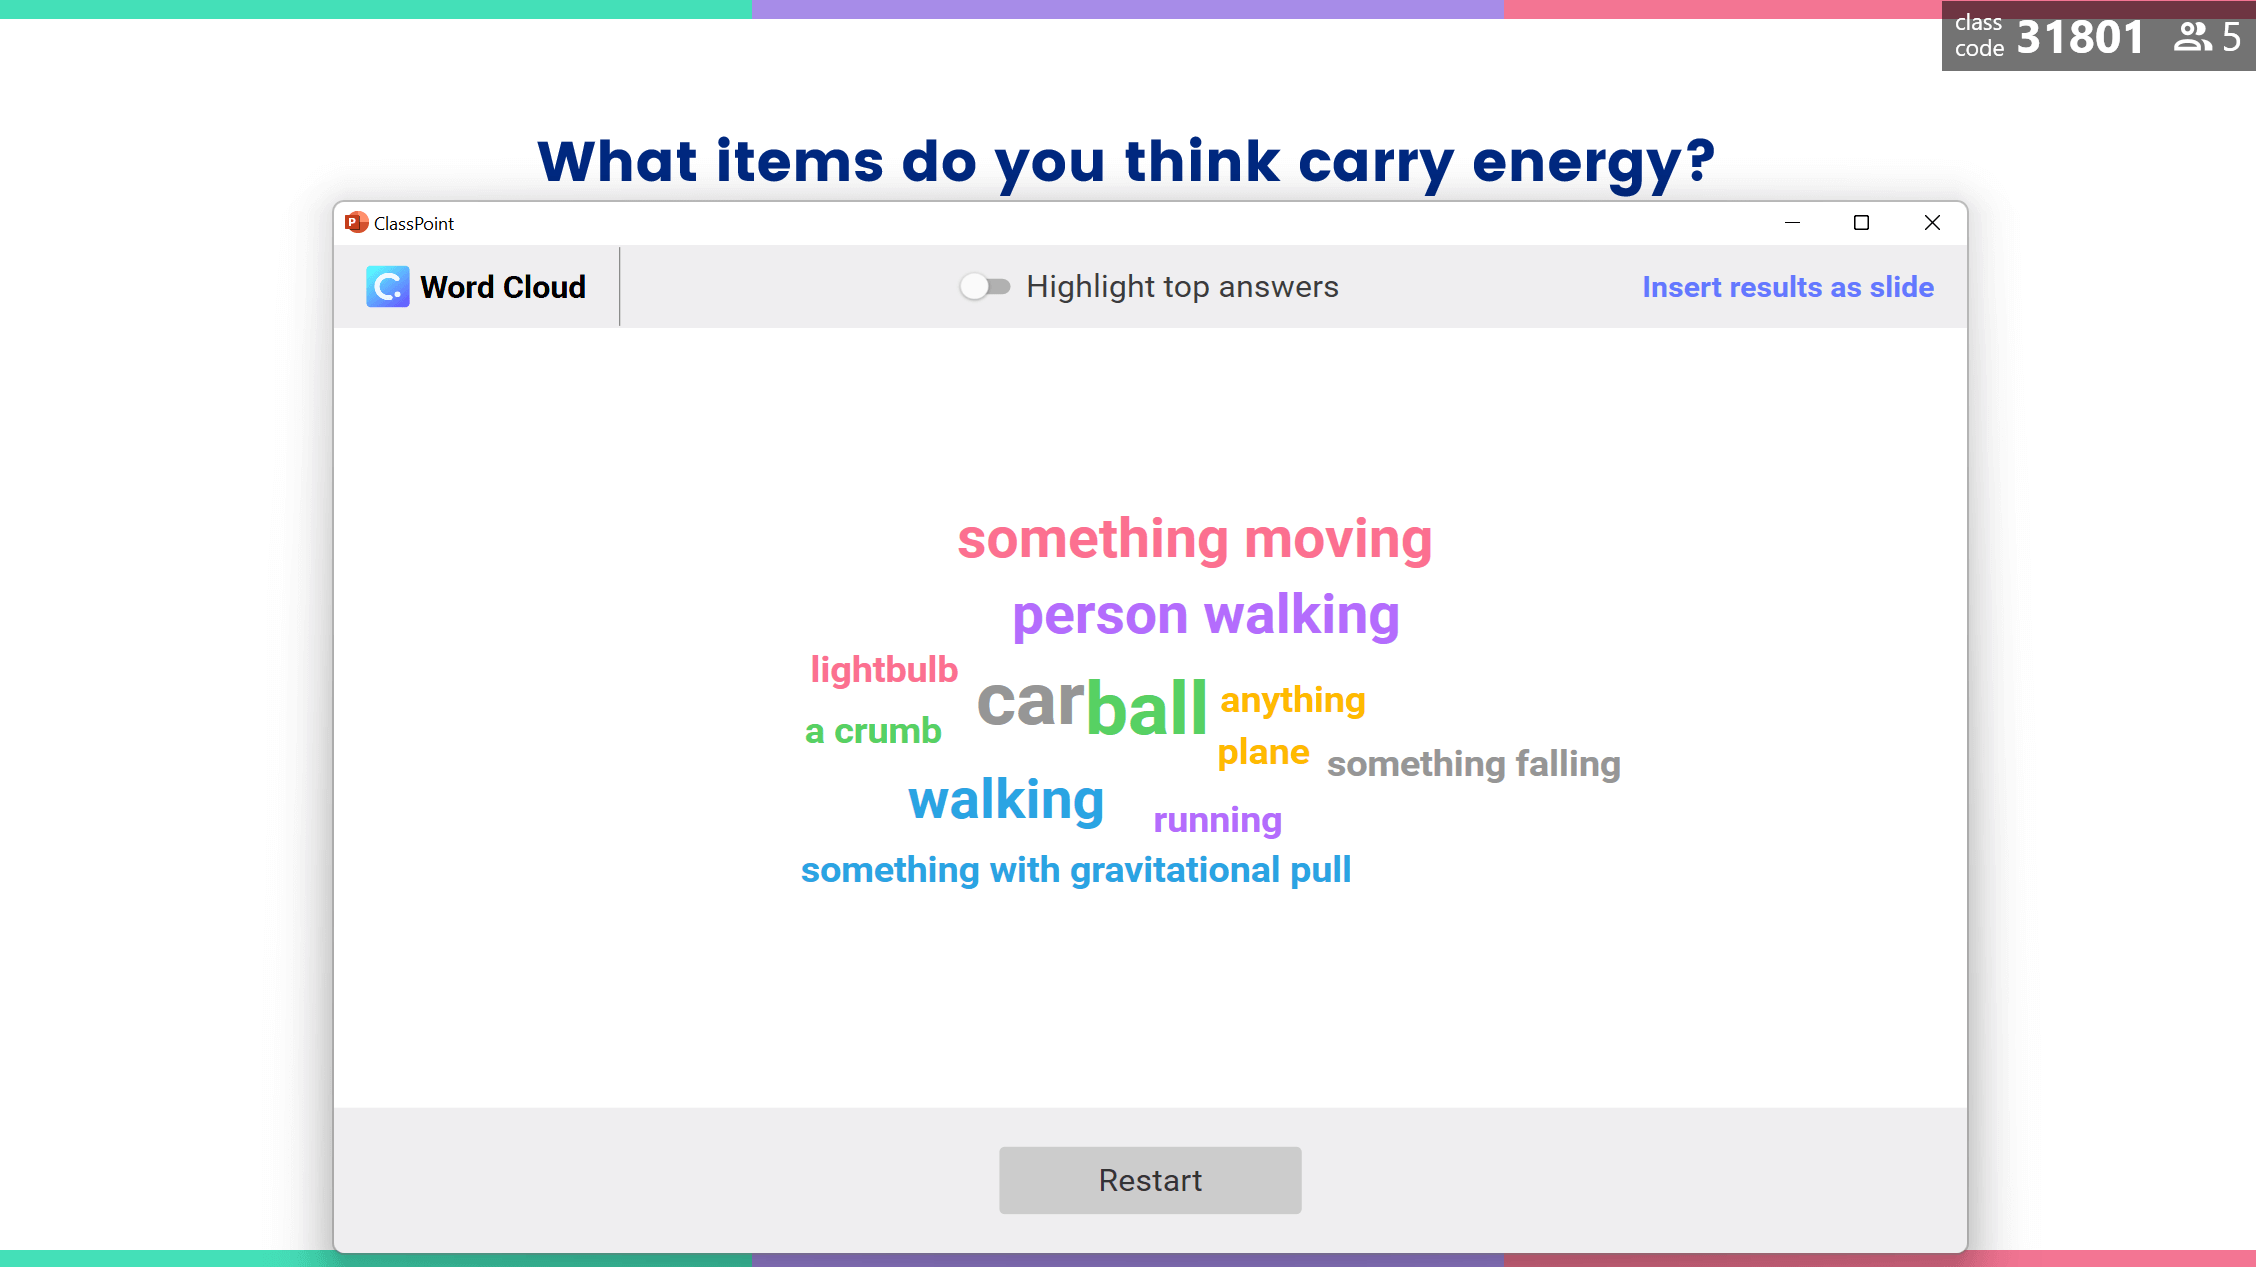 Activités sur le nuage de mots : Selon vous, quels sont les objets qui transportent de l'énergie ?